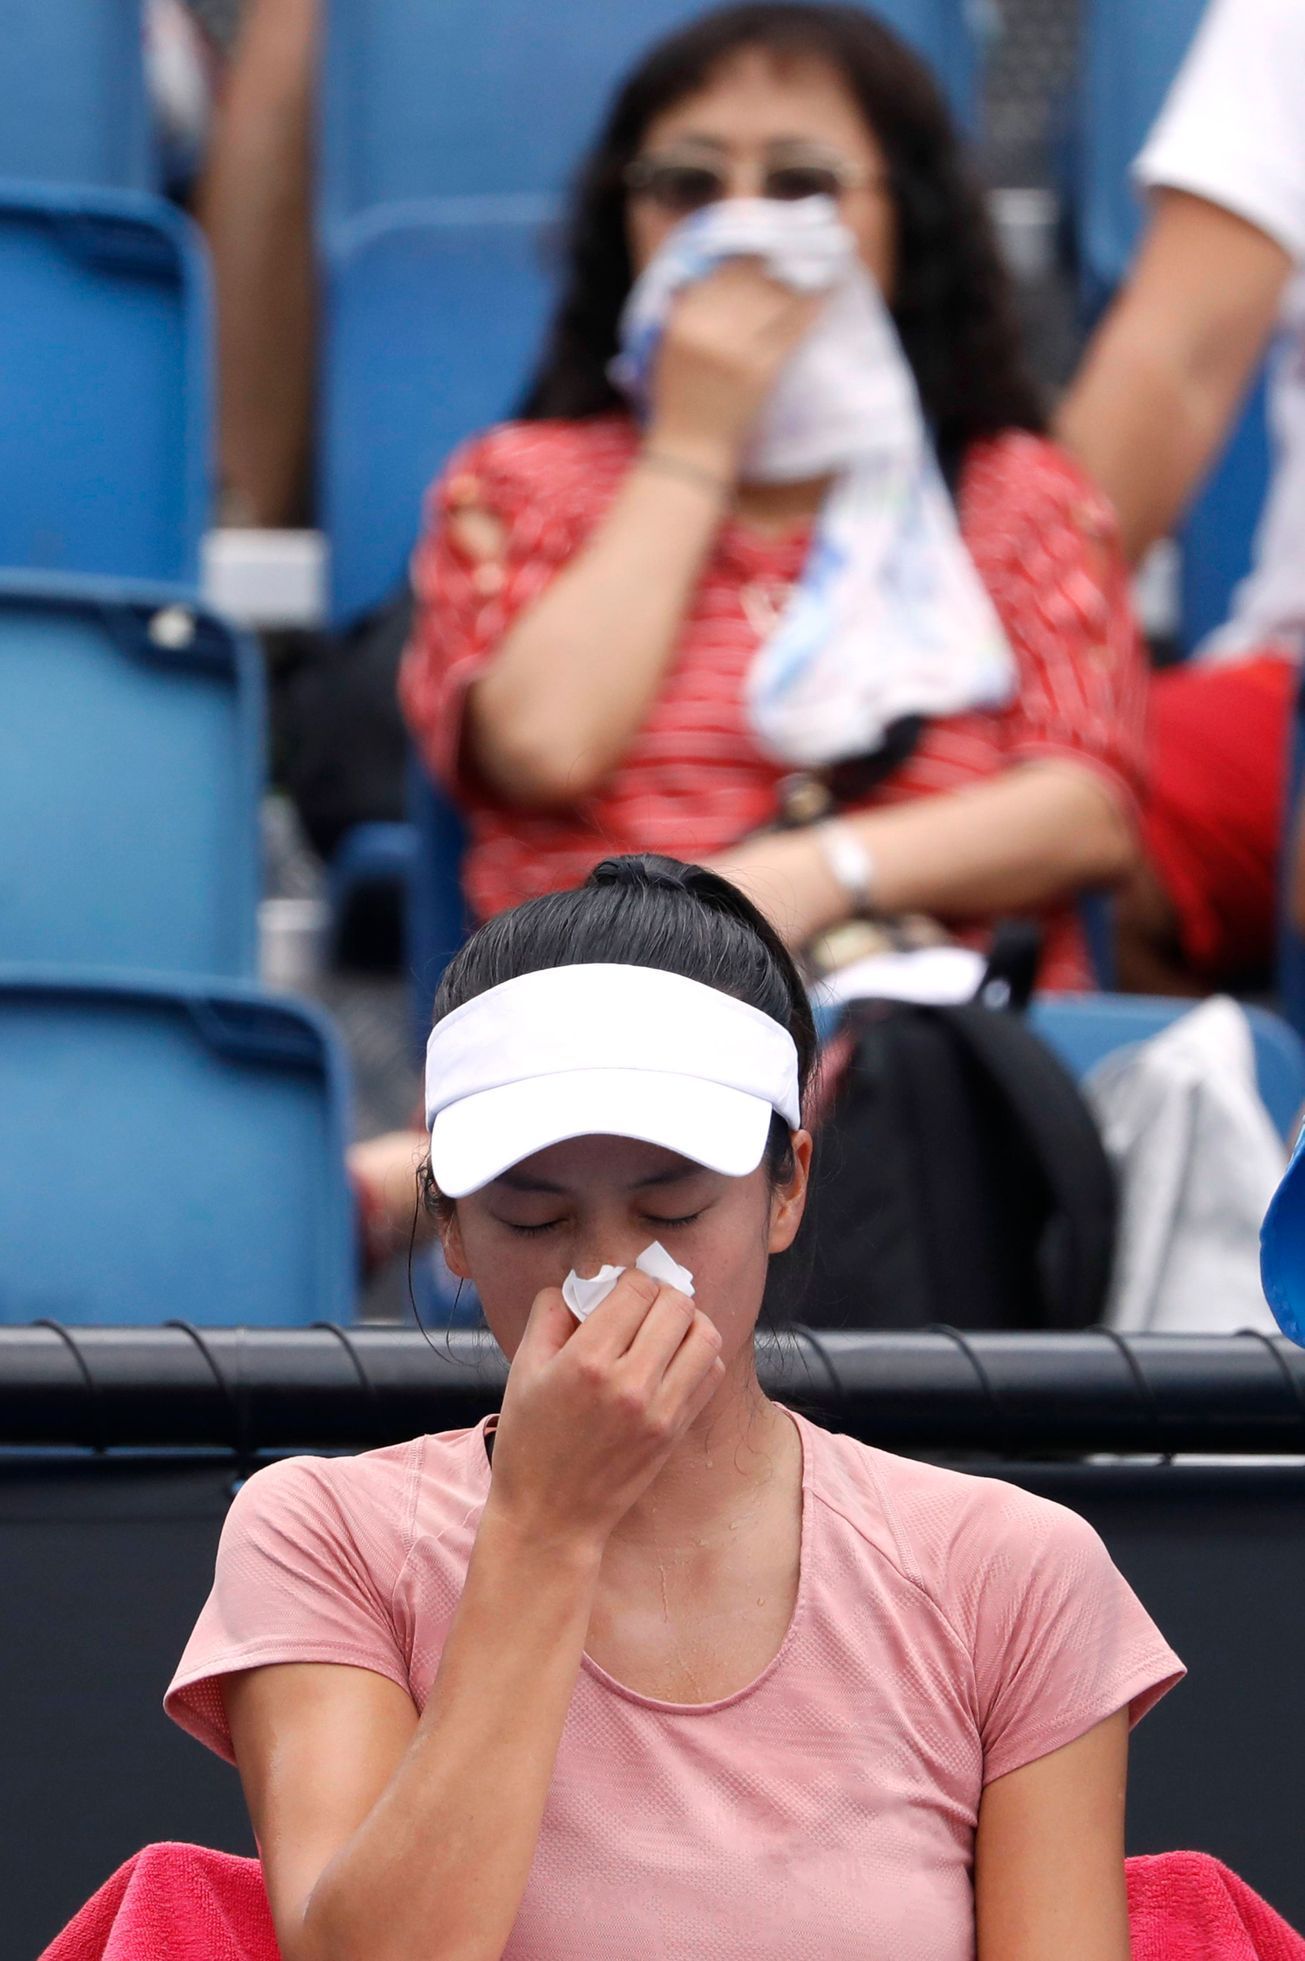 tenis, Australian Open 2019, Hsieh Su-Wei